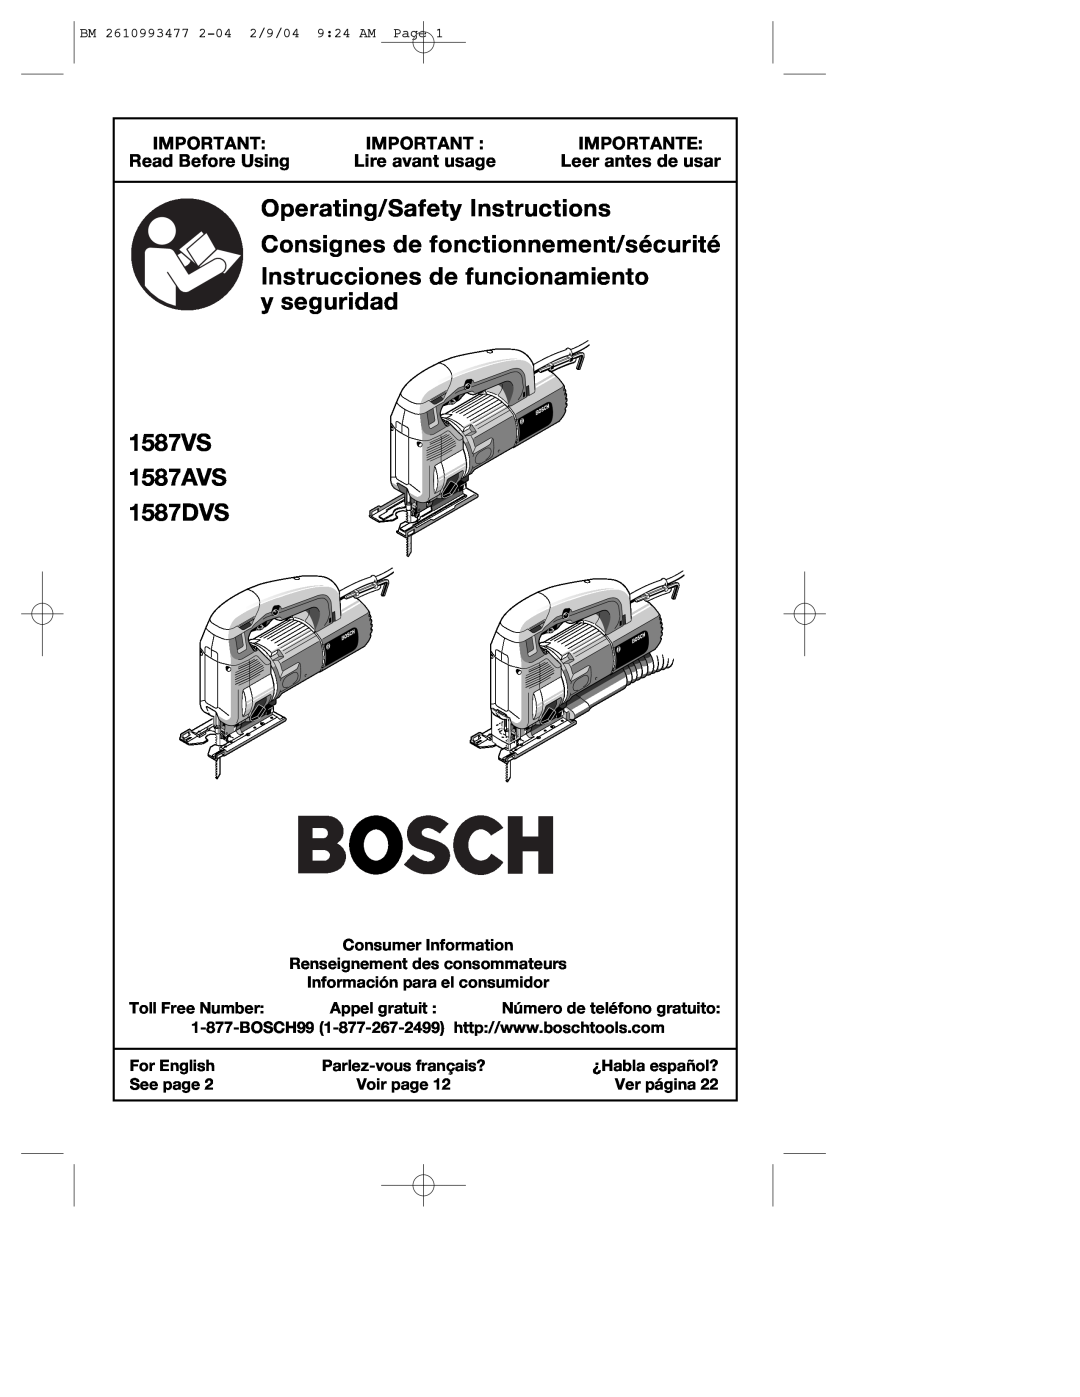 Bosch Power Tools 1587AVSK manual Importante, Read Before Using, Lire avant usage, Leer antes de usar, y seguridad, 1587VS 